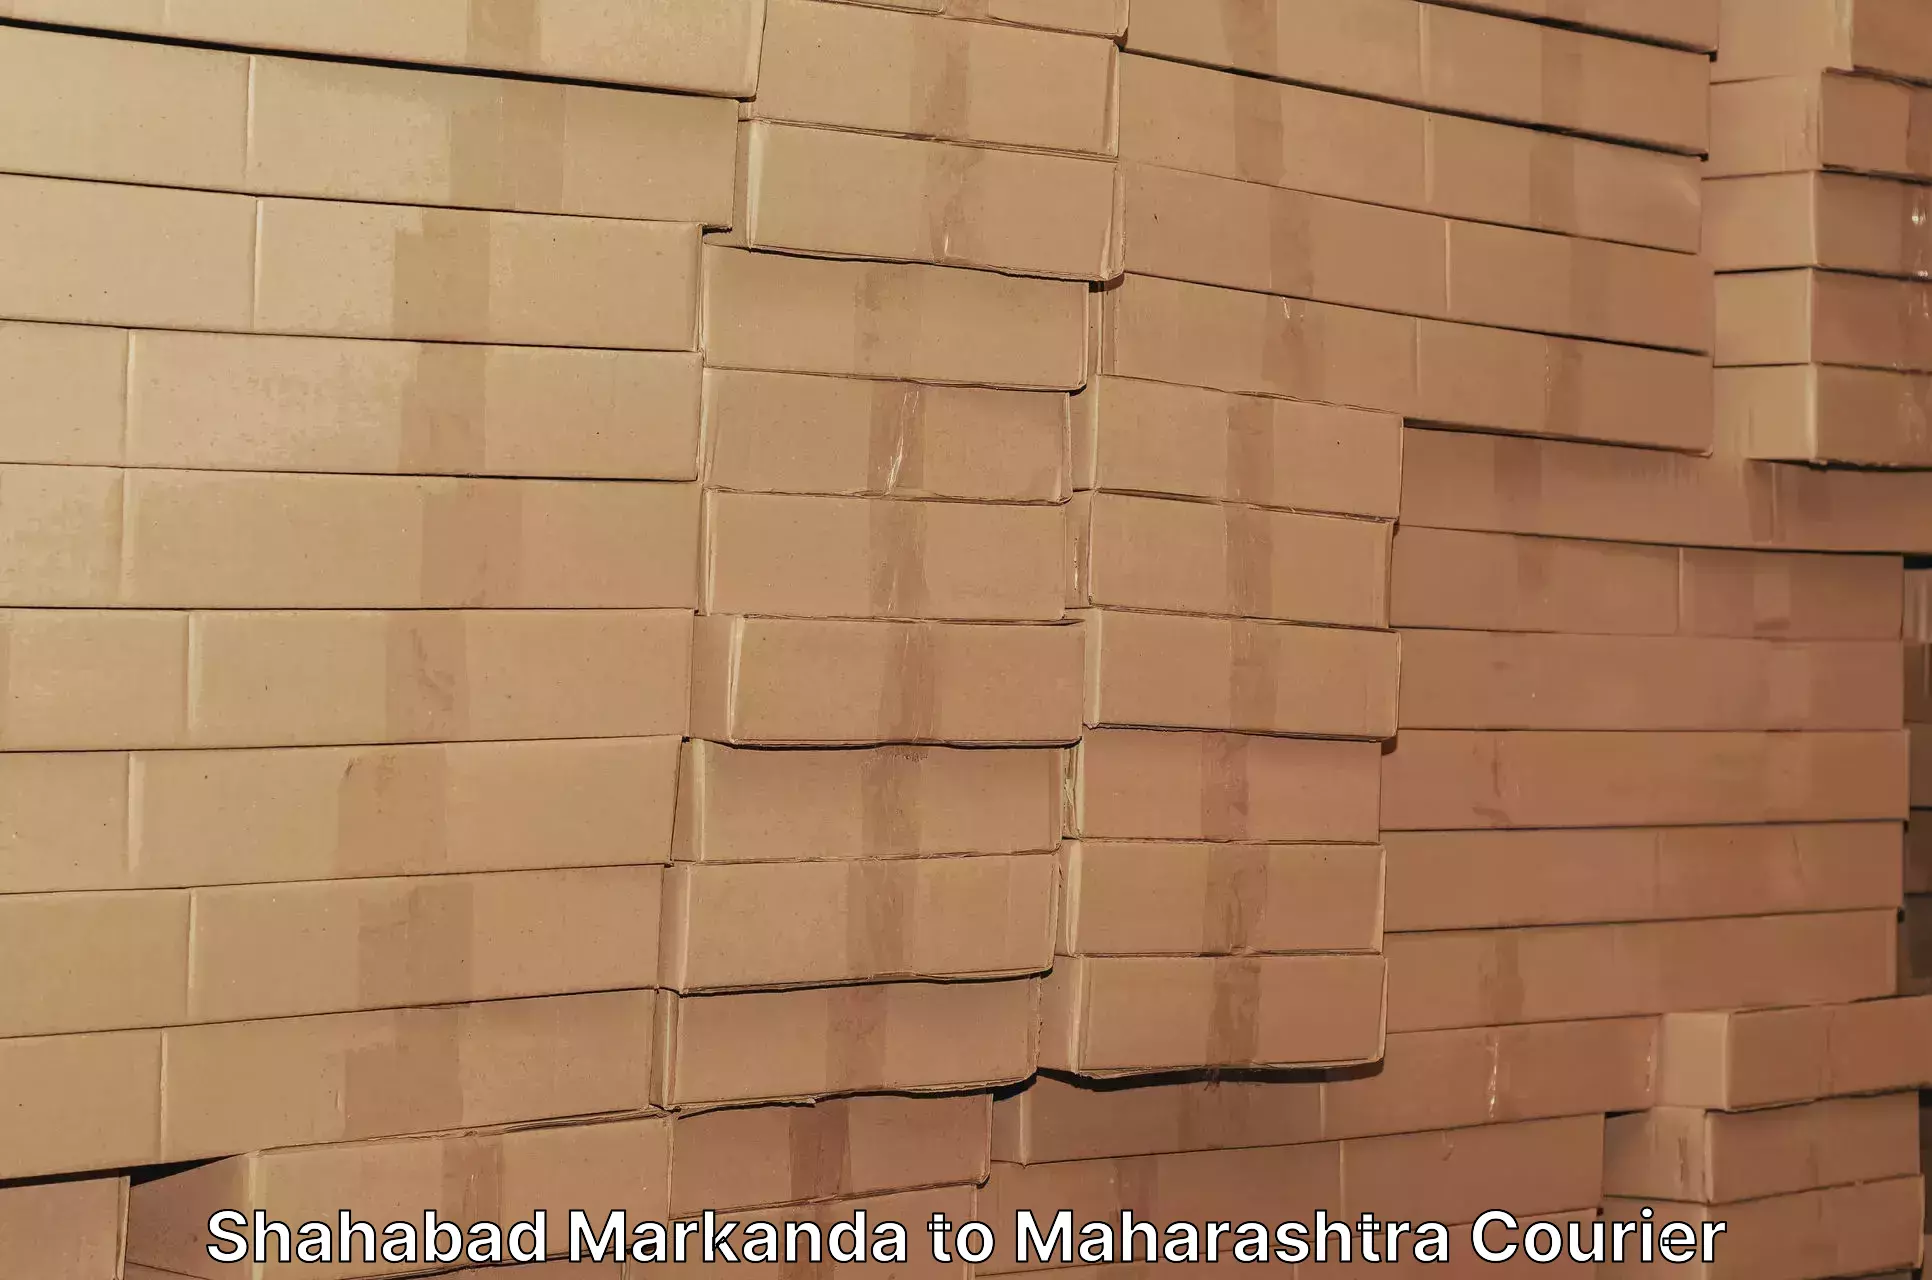 Small business couriers Shahabad Markanda to Maharashtra